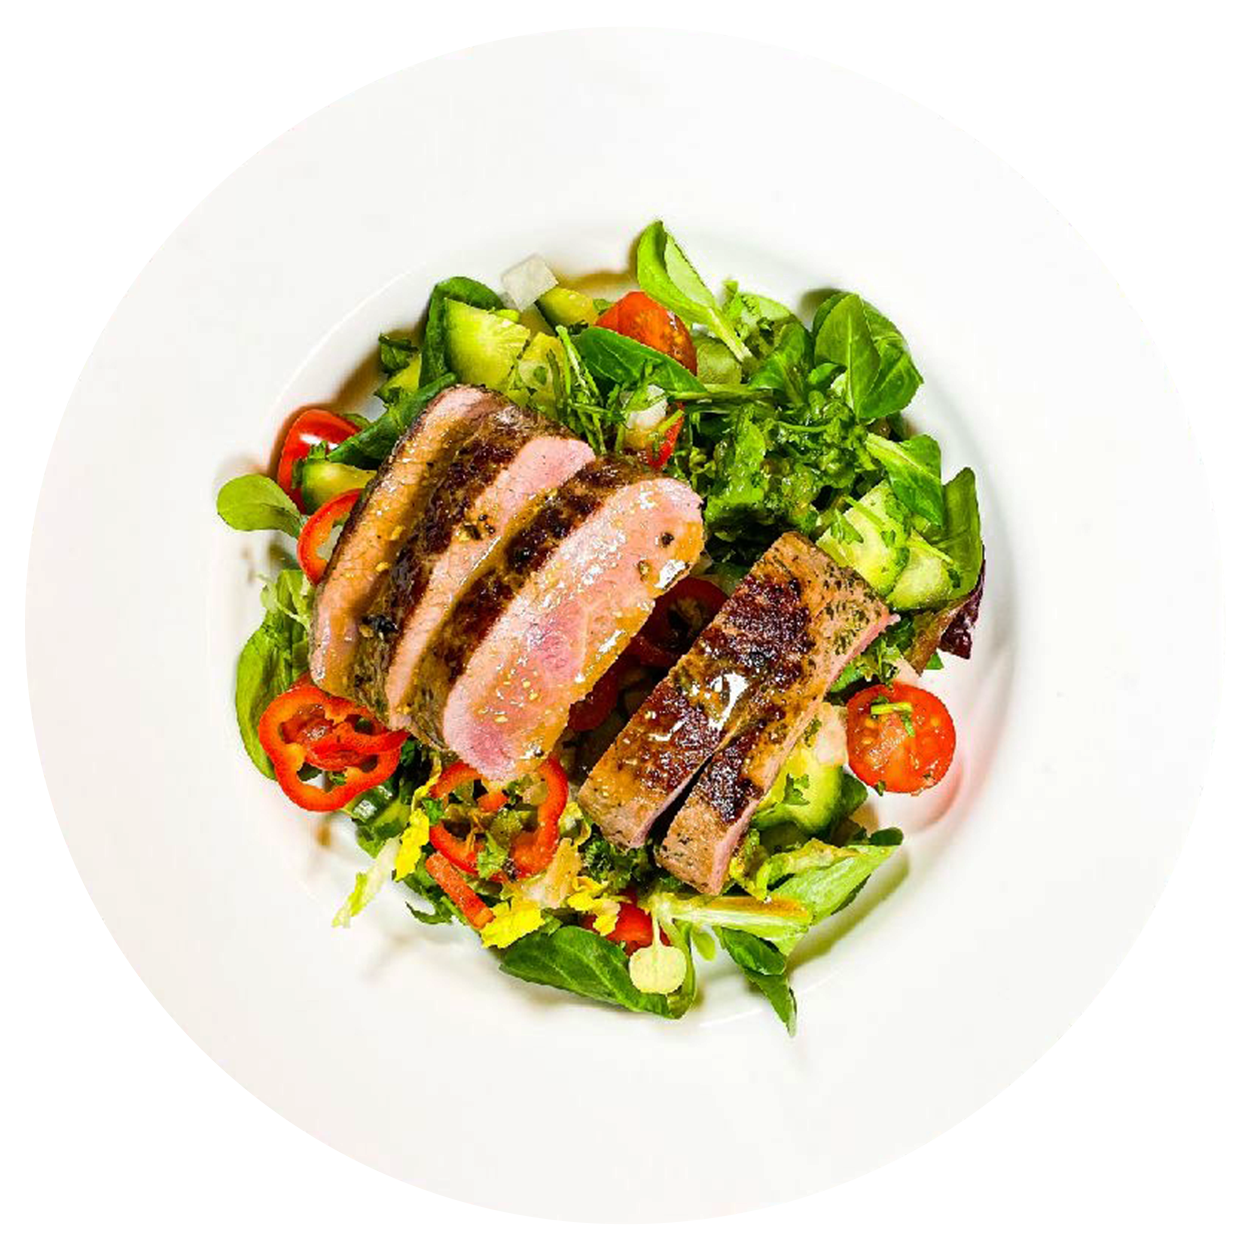 Salat mit mariniertem Lamm – Free the Food